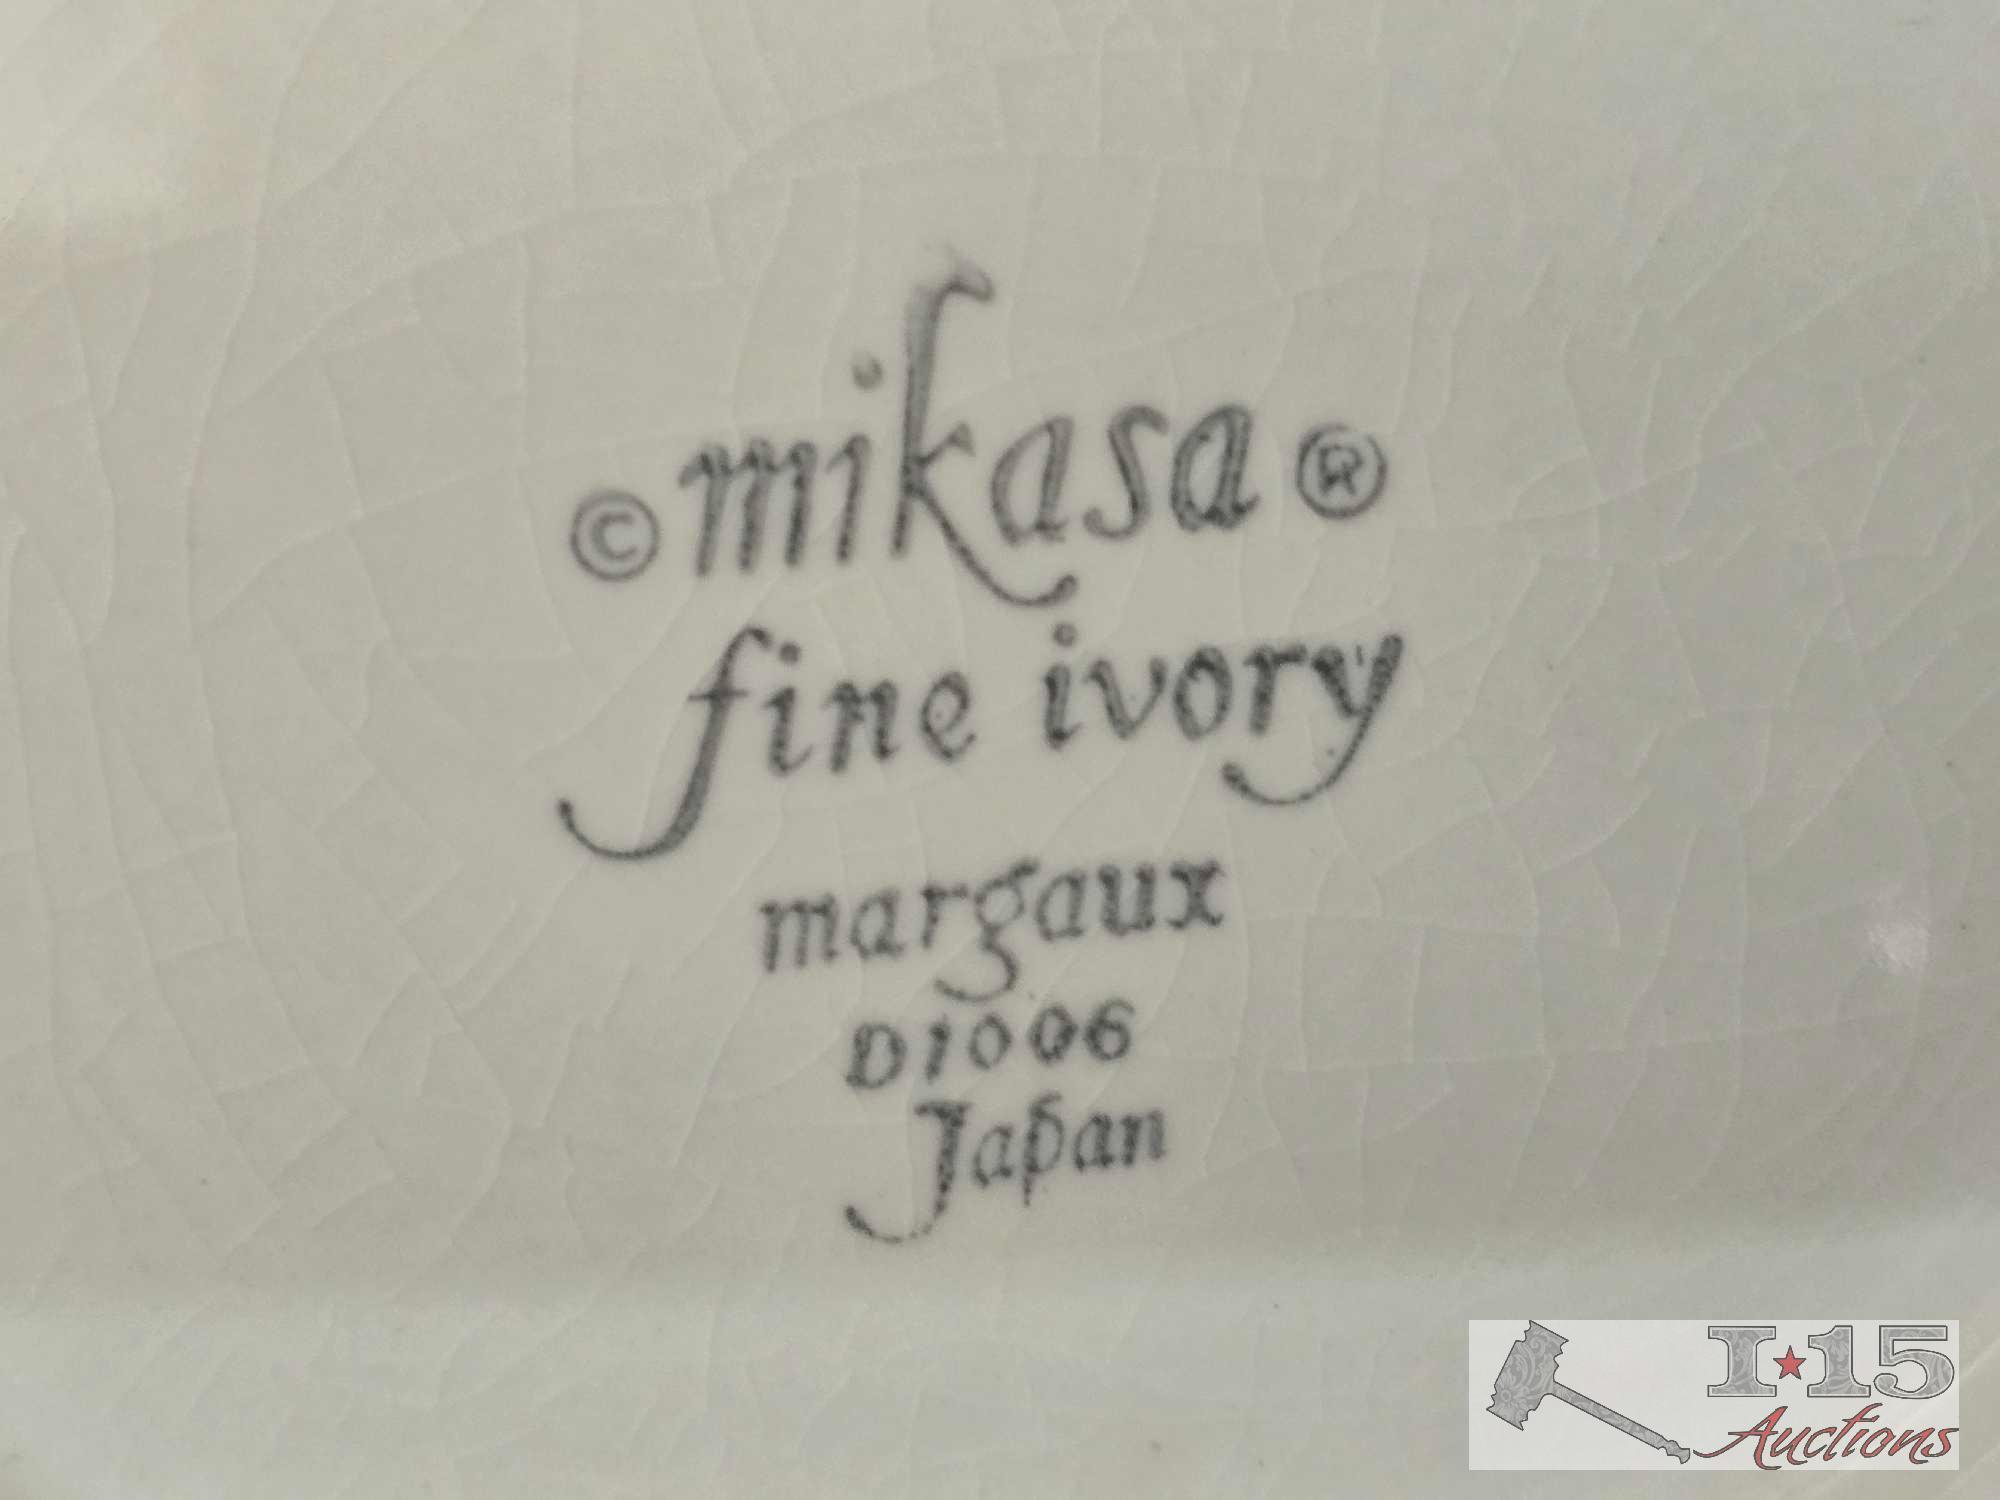 Mikasa Margaux, Noritake Savona, Limoges Dishes